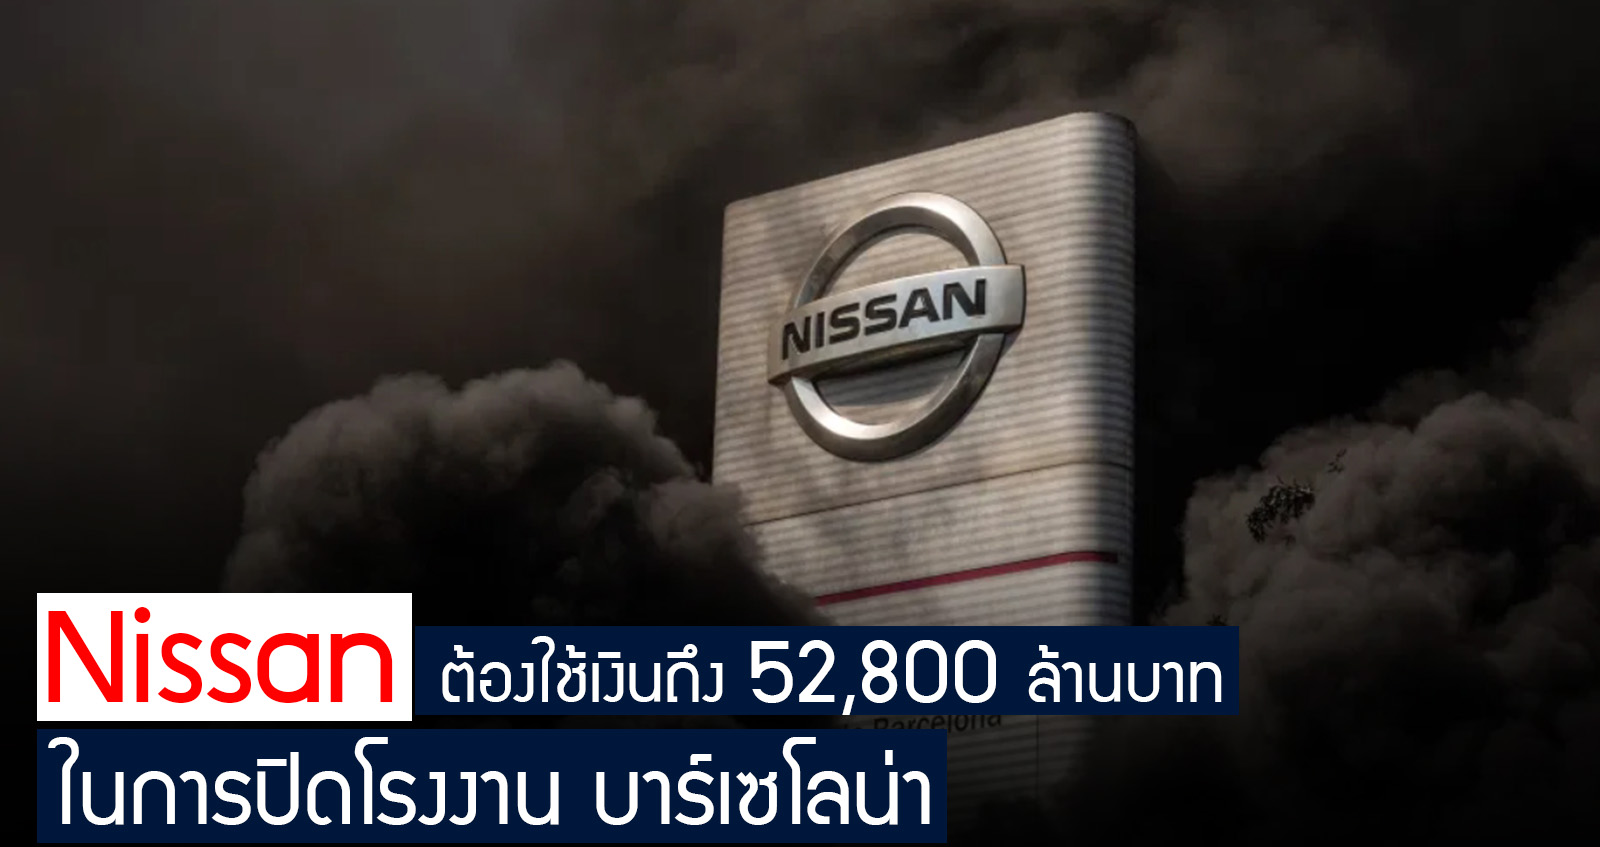 Nissan ต้องใช้เงินถึง 52,800 ล้านบาท ในการปิดโรงงาน บาร์เซโลน่า